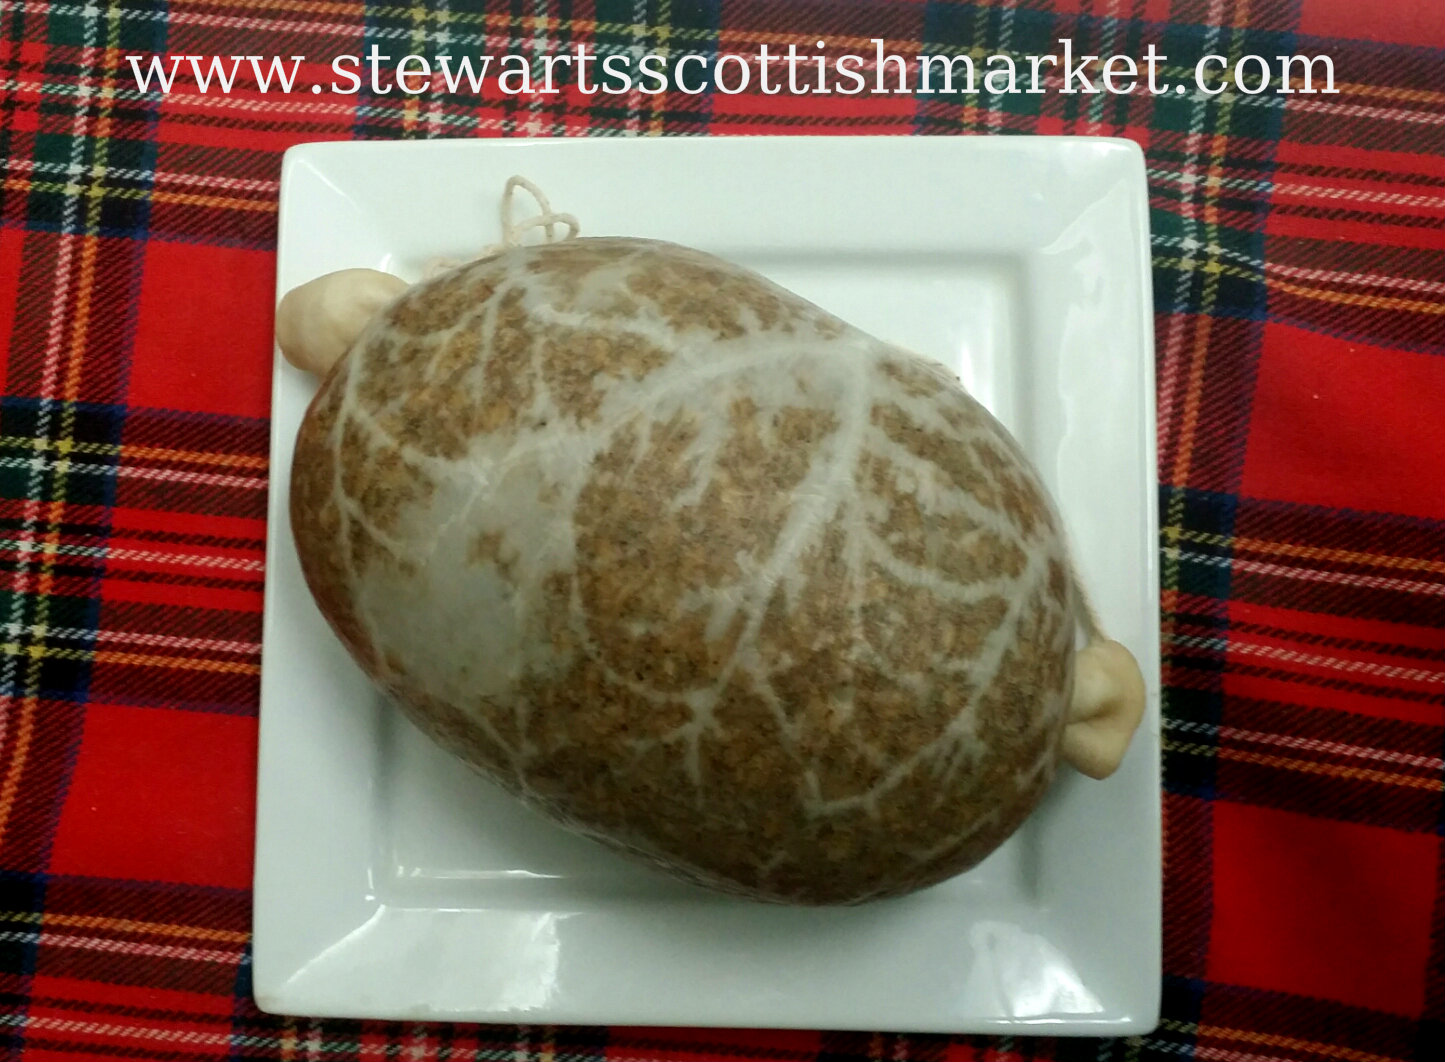 Haggis traditional Scottish dish